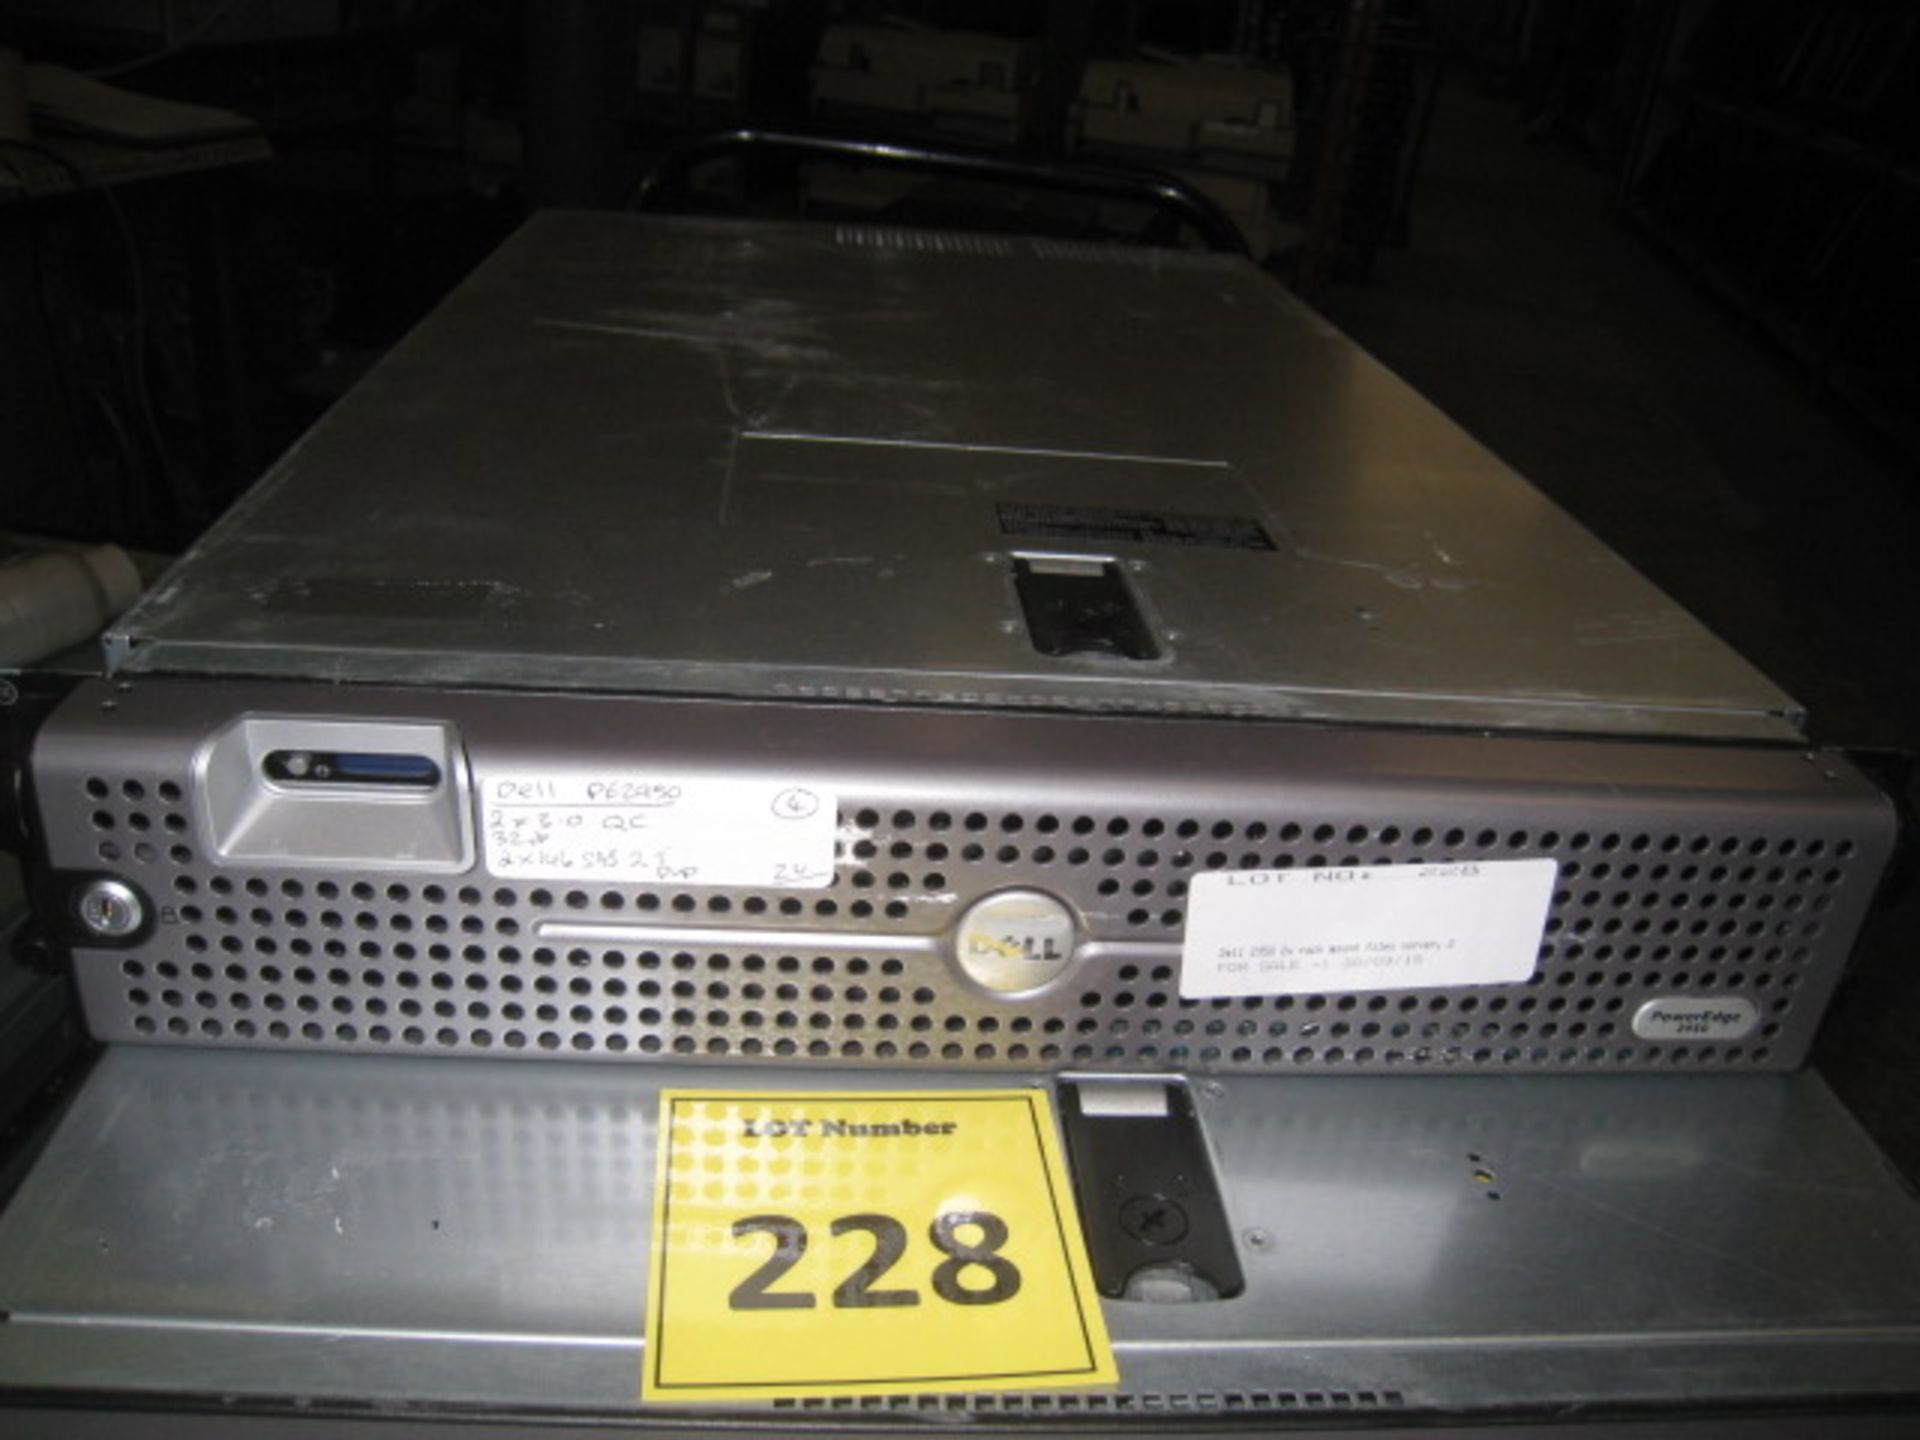 Dell 2950 2u rack mount files server, 2 x Quad Core/3.00ghz processors, 32gb RAM, 2 x 146Gb HDD's,